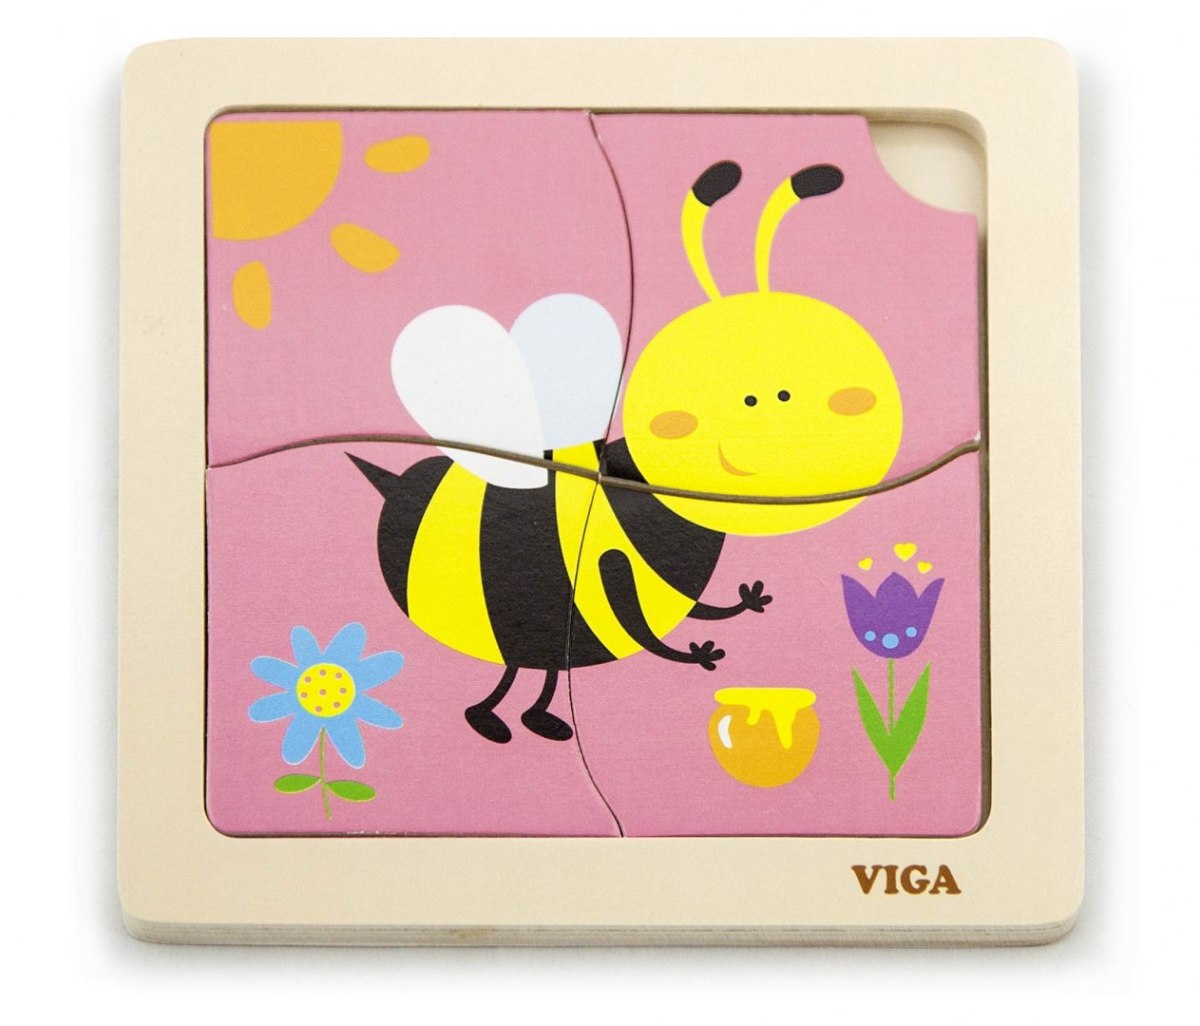 Drewniane puzzle na podkładce - pszczółka Viga